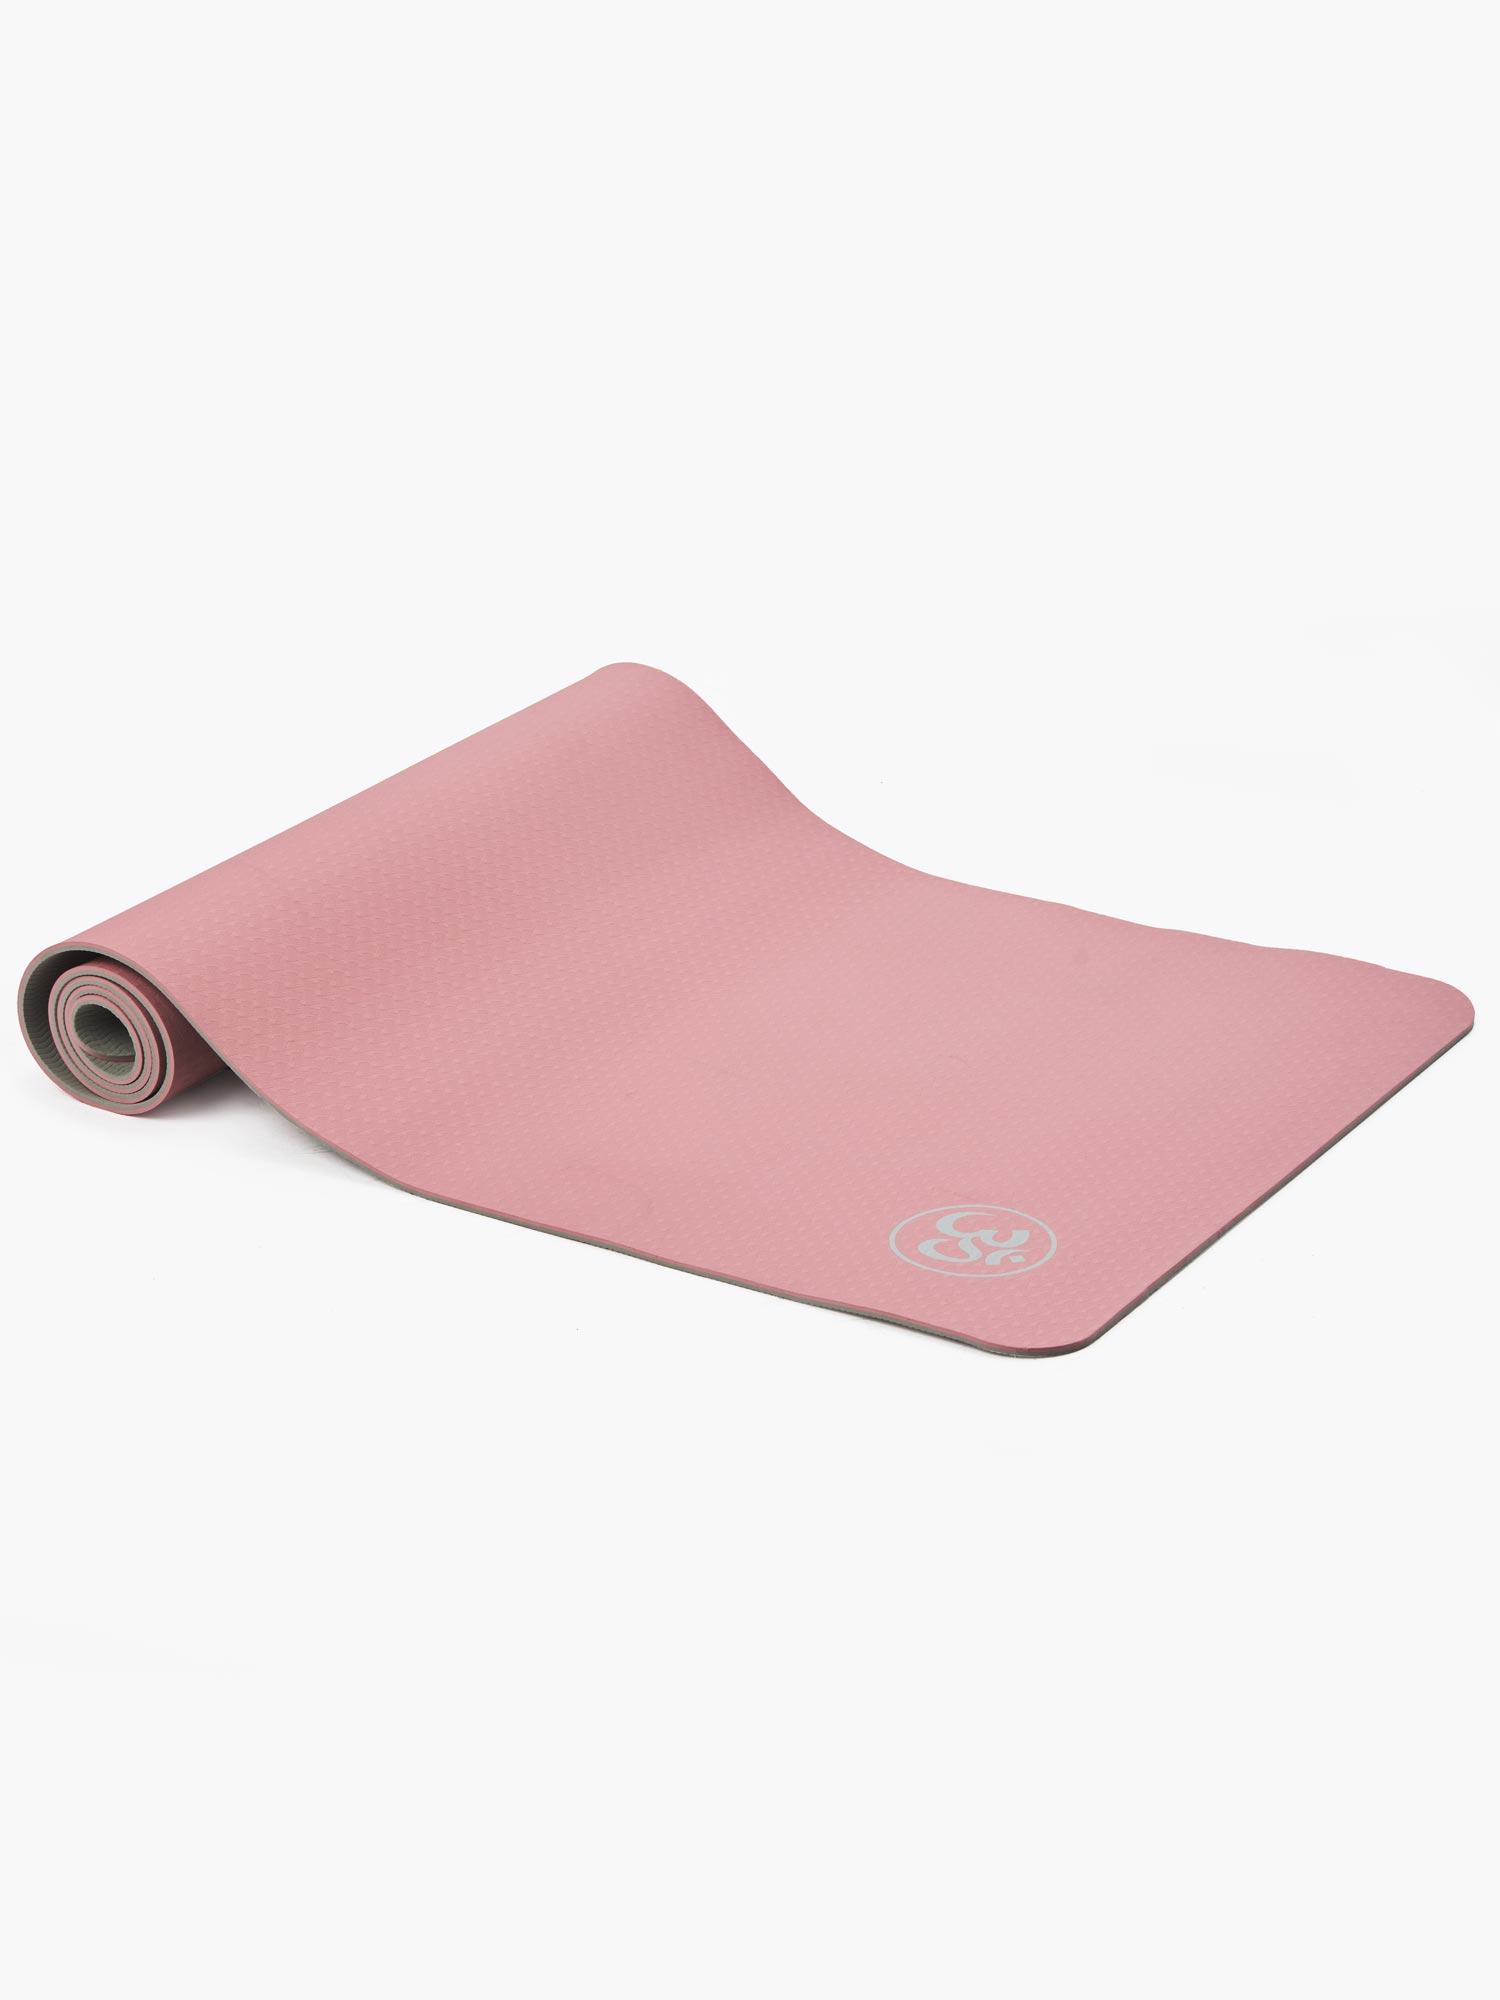 Selected image for ORION Prostirka za vežbanje Yoga roze